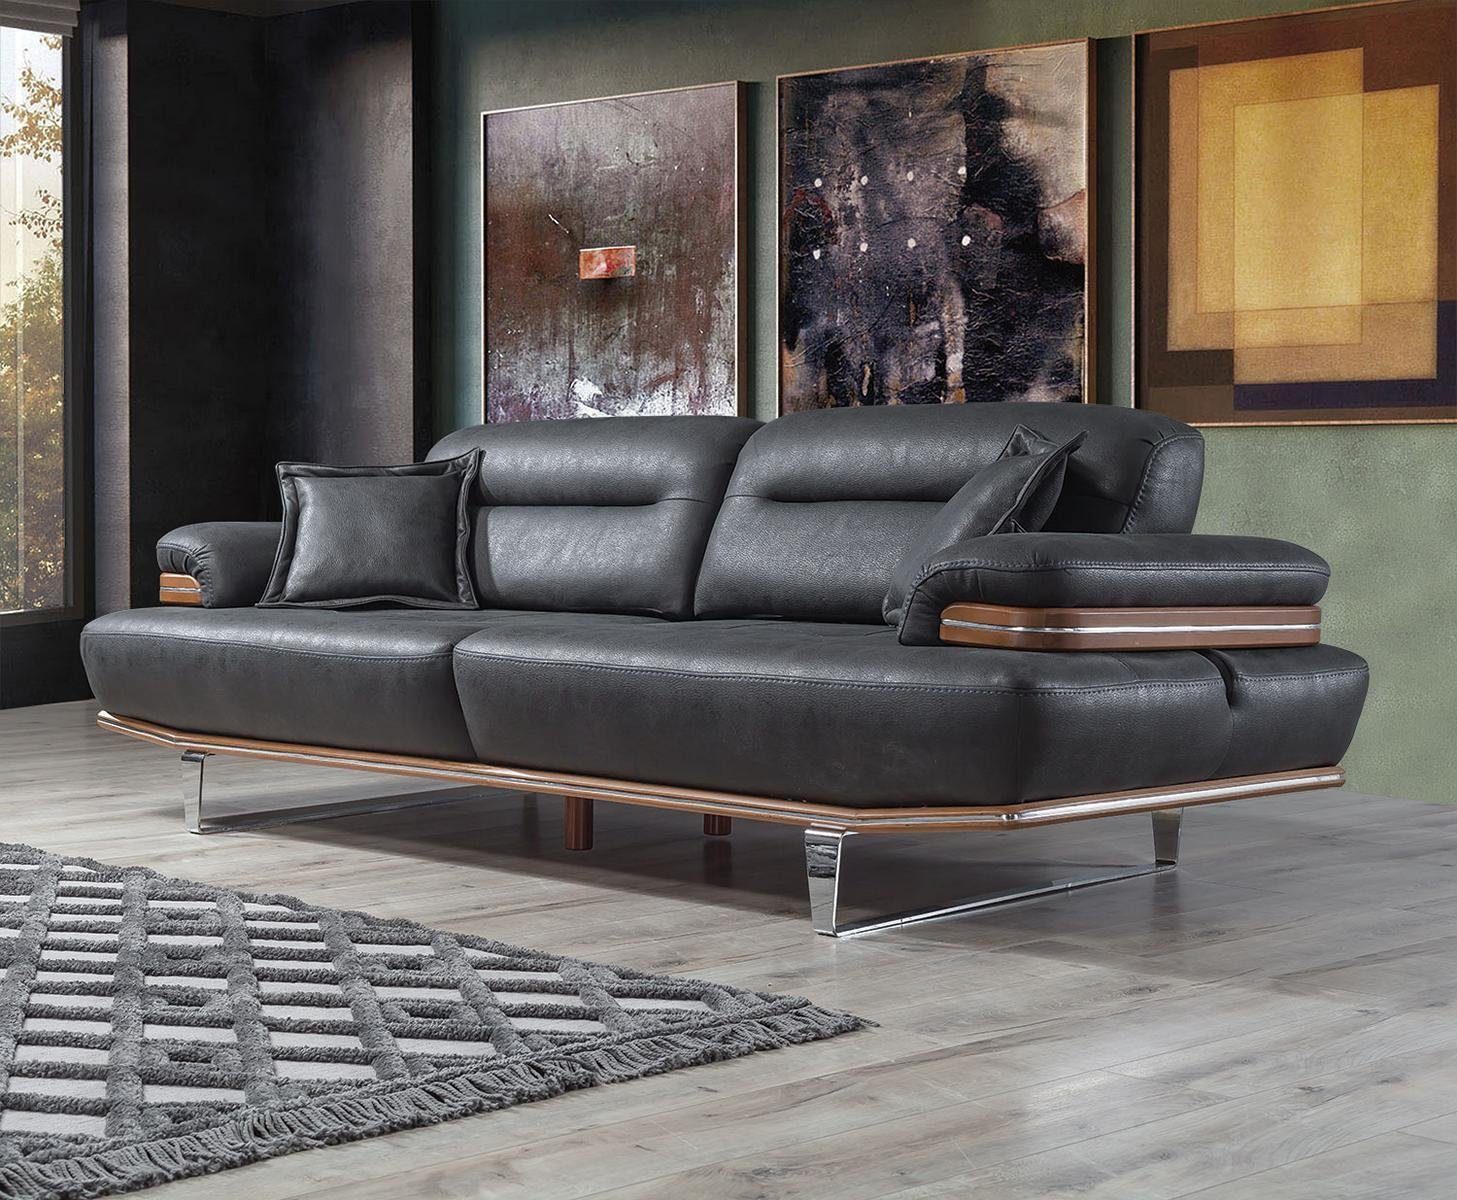 JVmoebel Sofa Wohnzimmer Sofa Teile, 1 Modern MAde Polster Dreisitzer in Sitz Europa Designer, Modern Couch